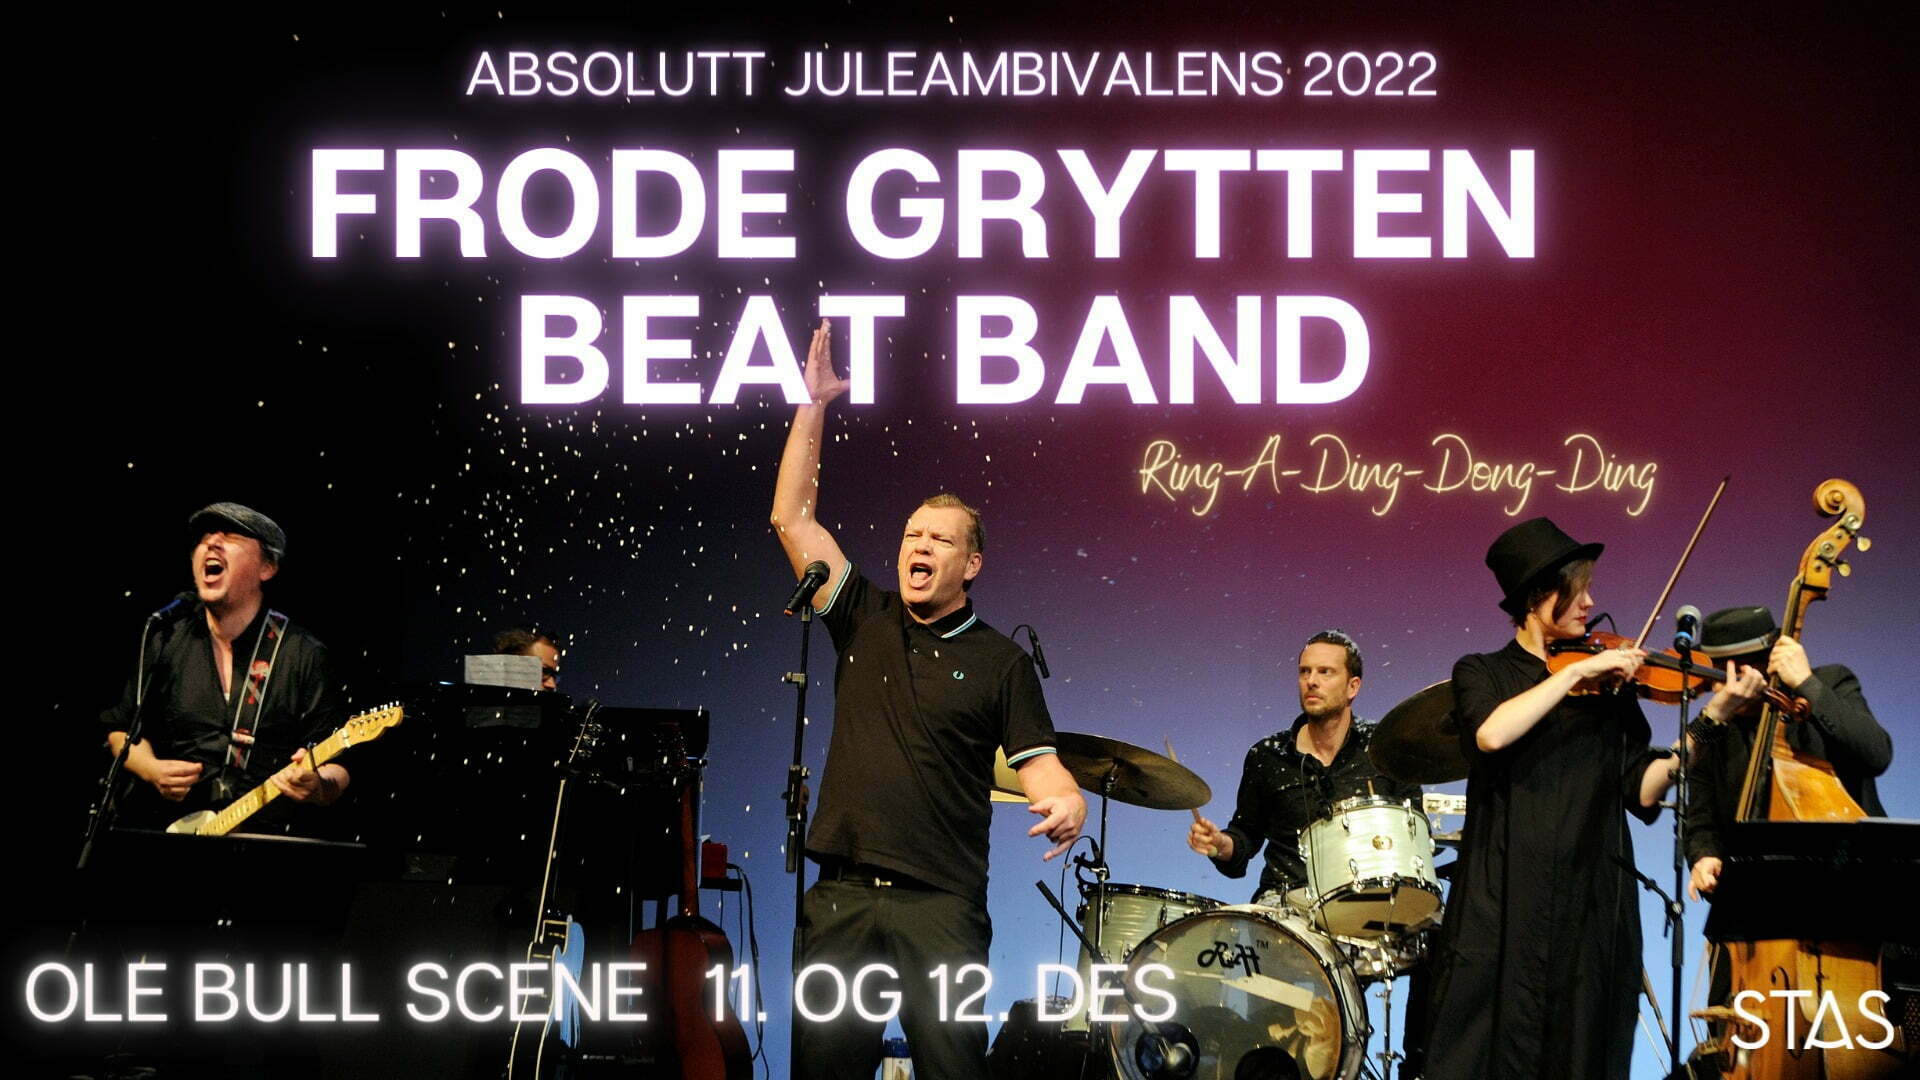 Frode Grytten Beat Band // Absolutt juleambivalens  - Stas 